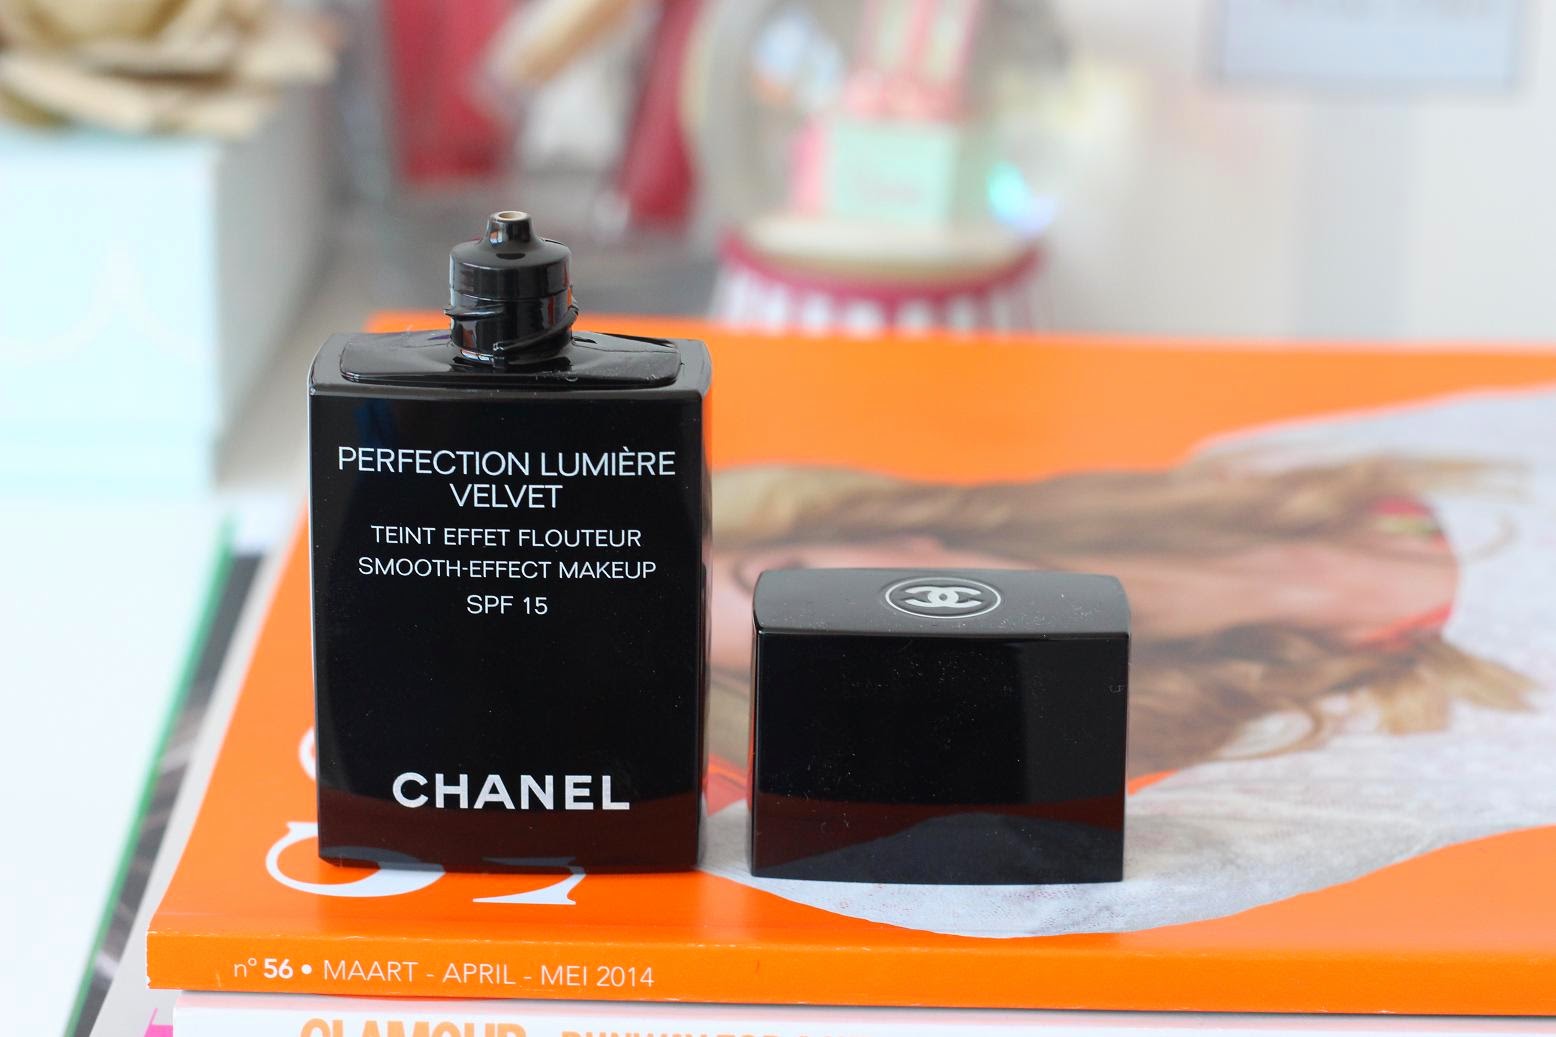 Chanel Perfection Lumière Velvet foundation